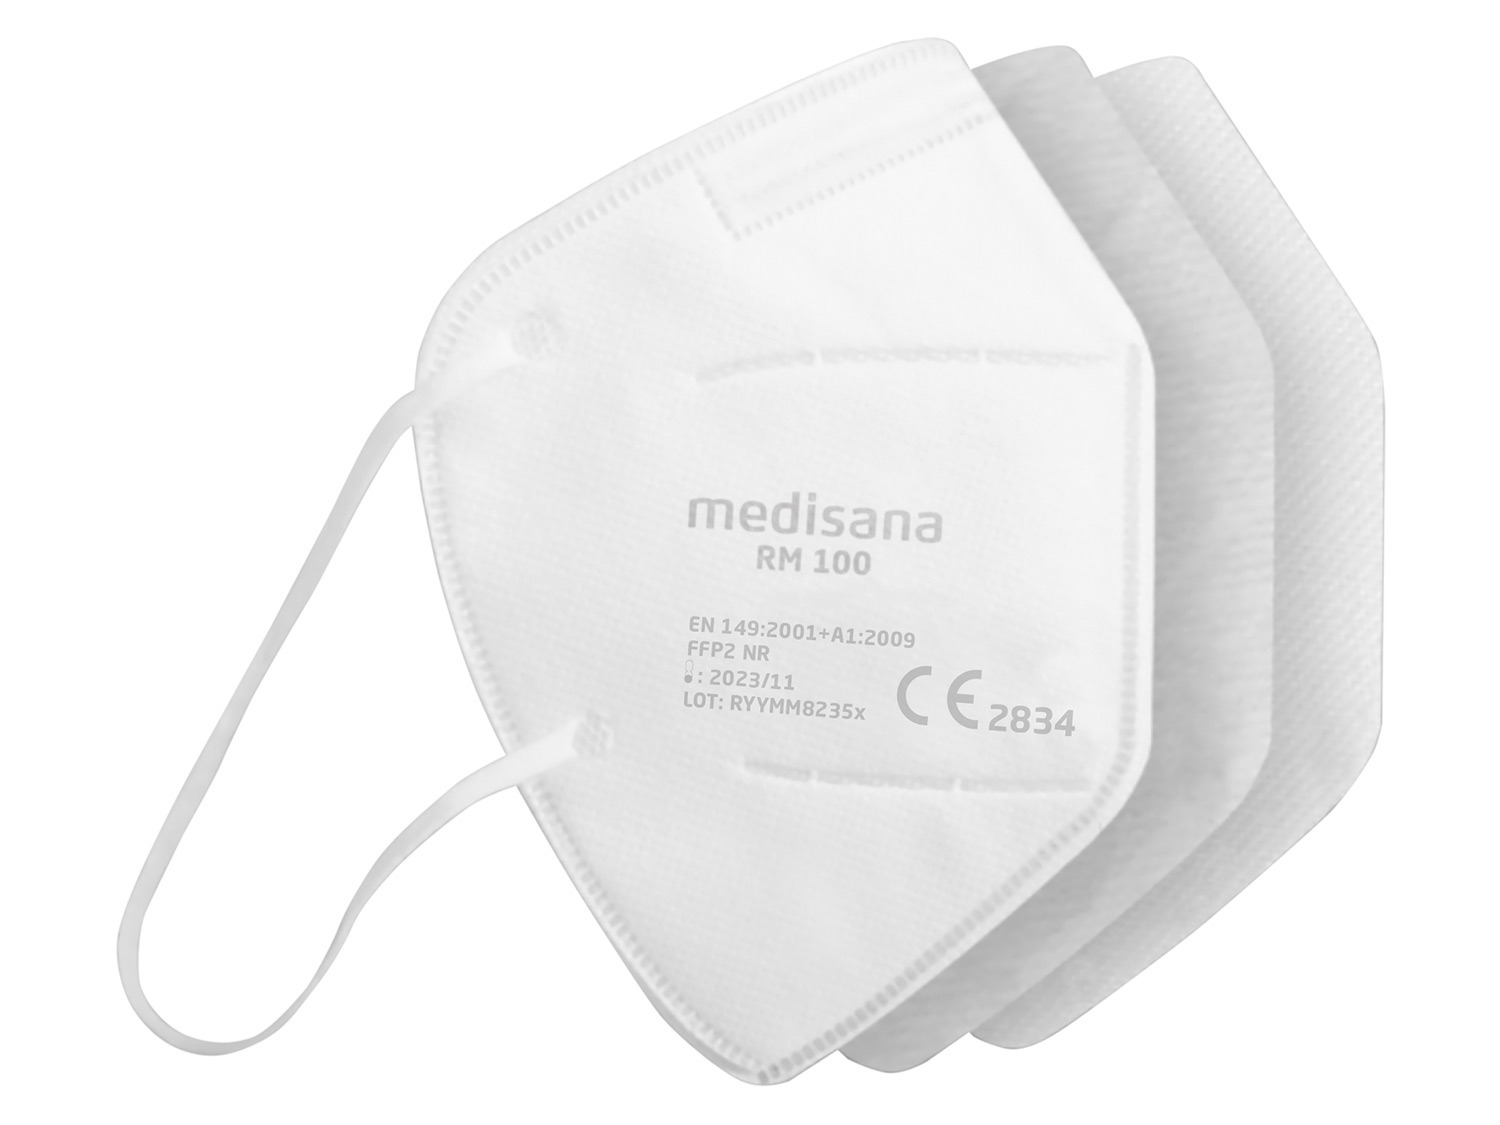 100 LIDL Atemschutzmasken MEDISANA | FFP2 10pcs/set RM